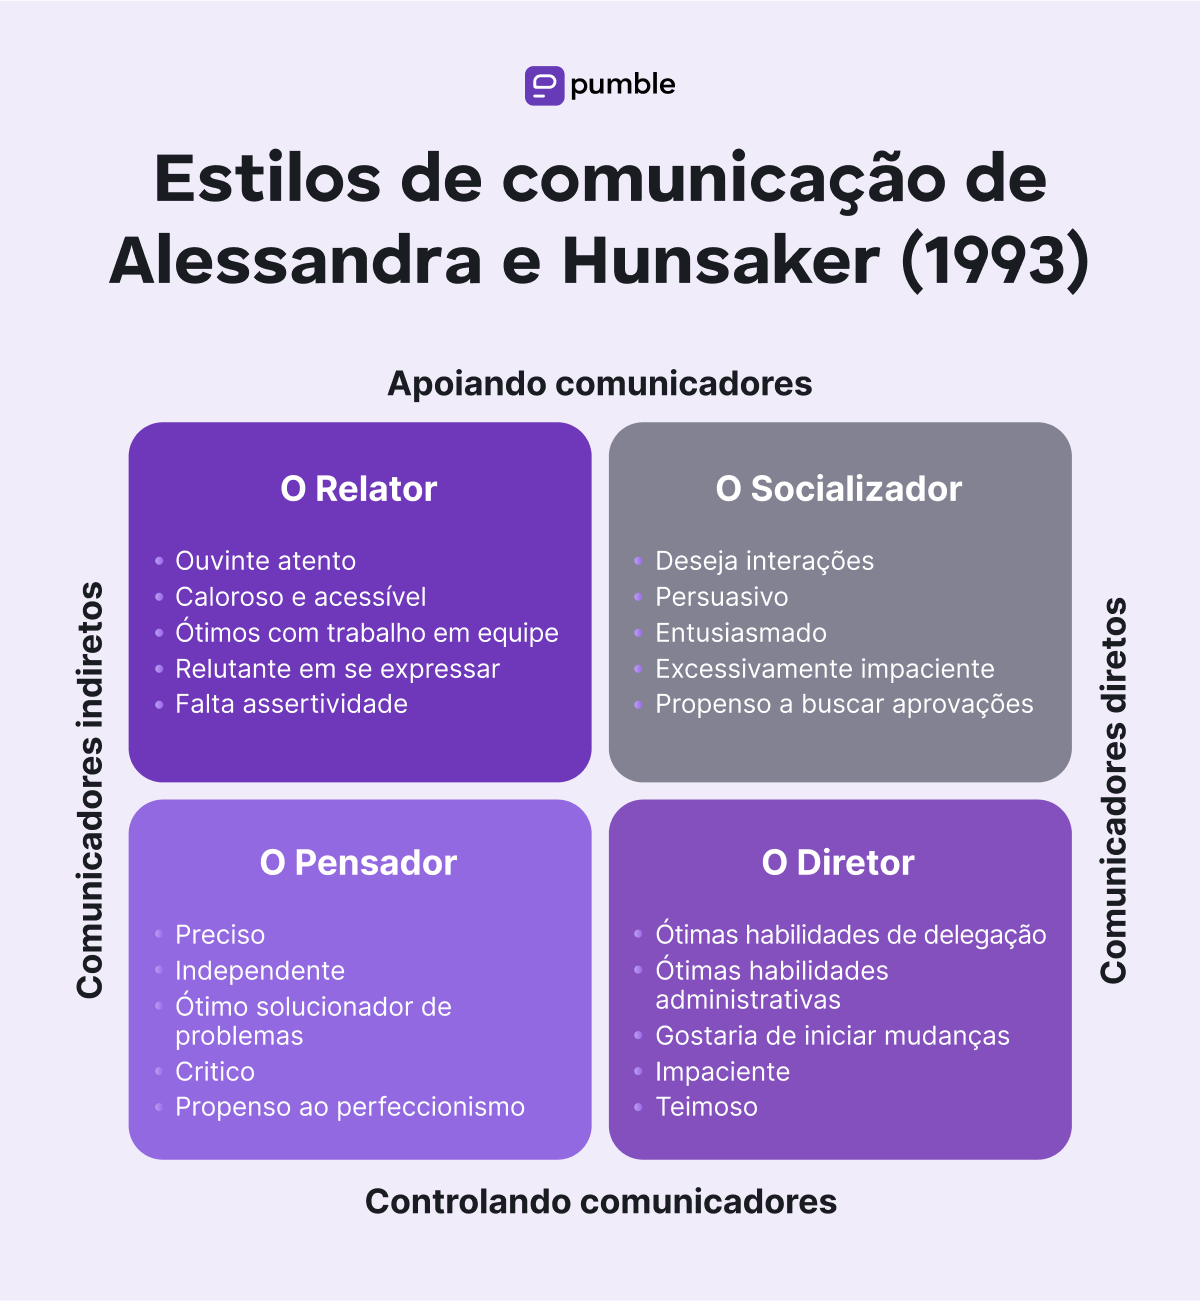 Communication styles by Alessandra & Hunsaker (1993)